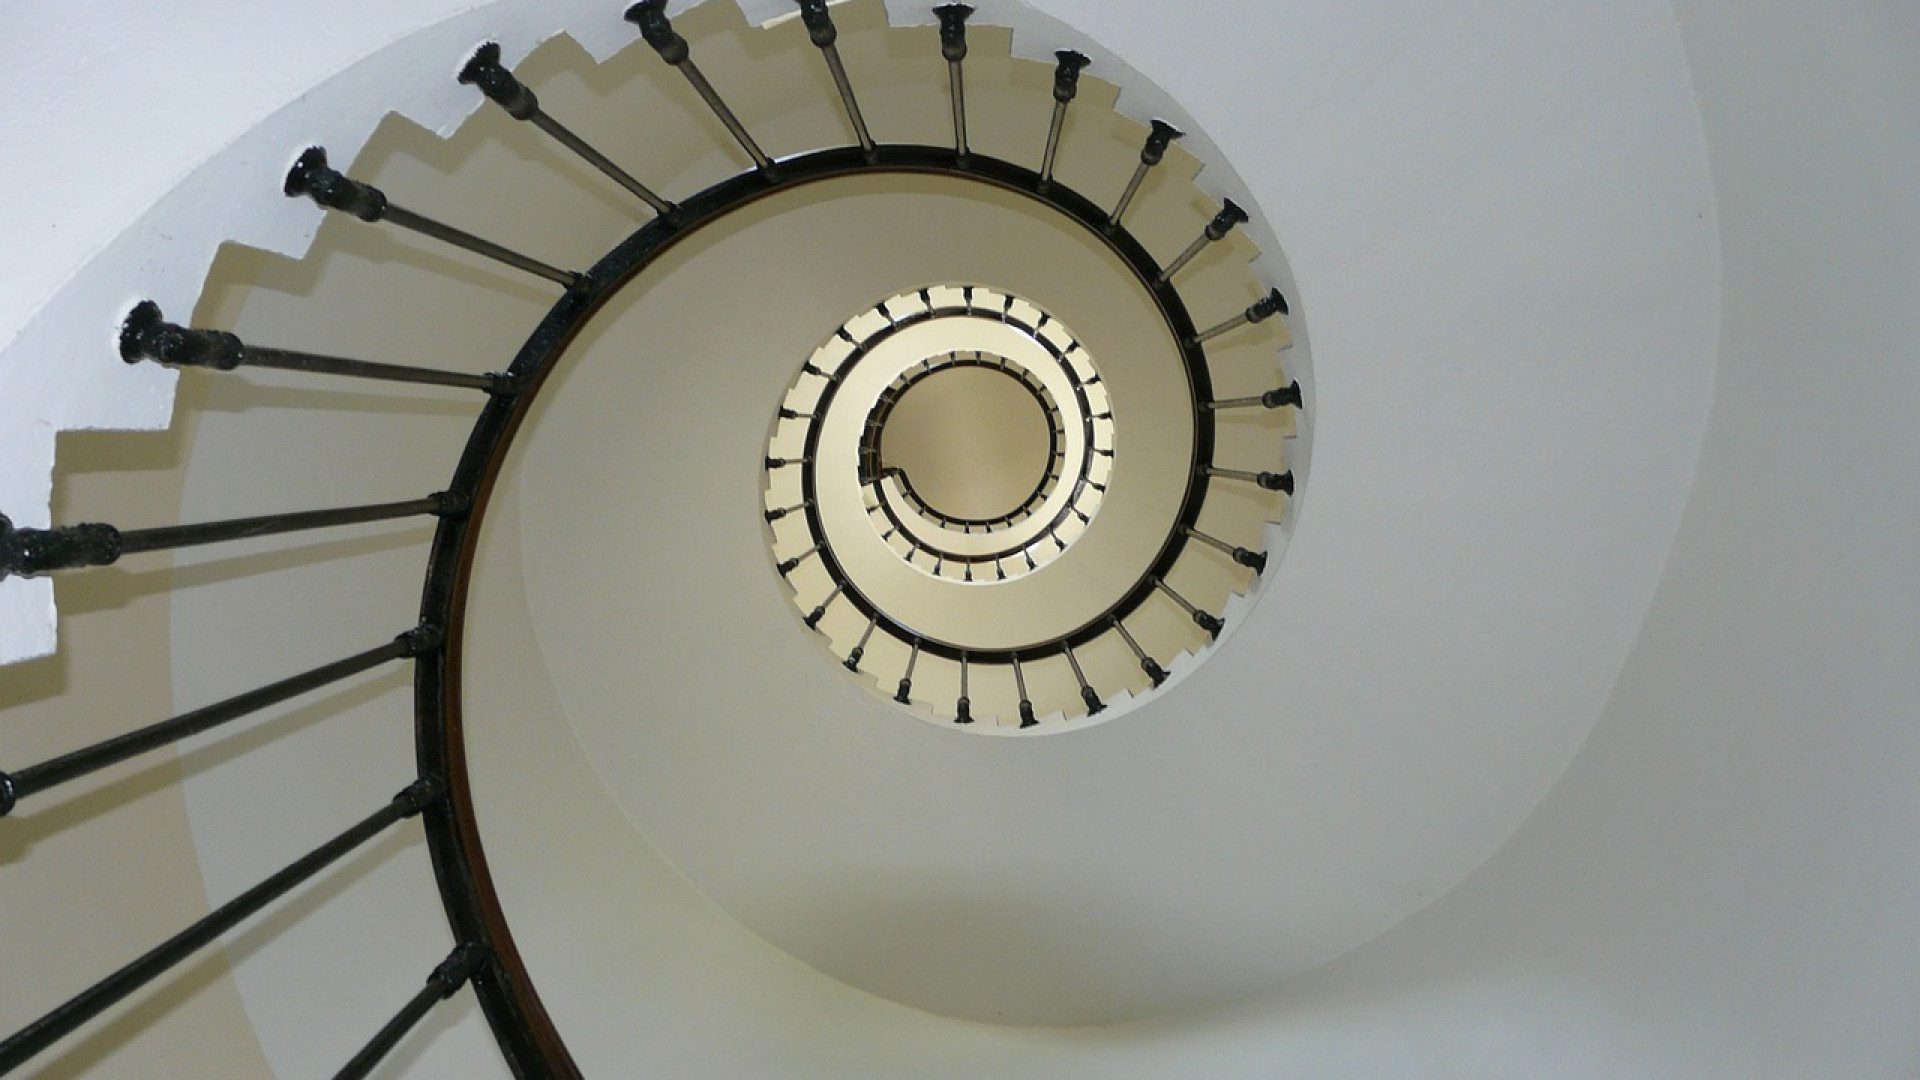 Choisir un escalier pratique et design